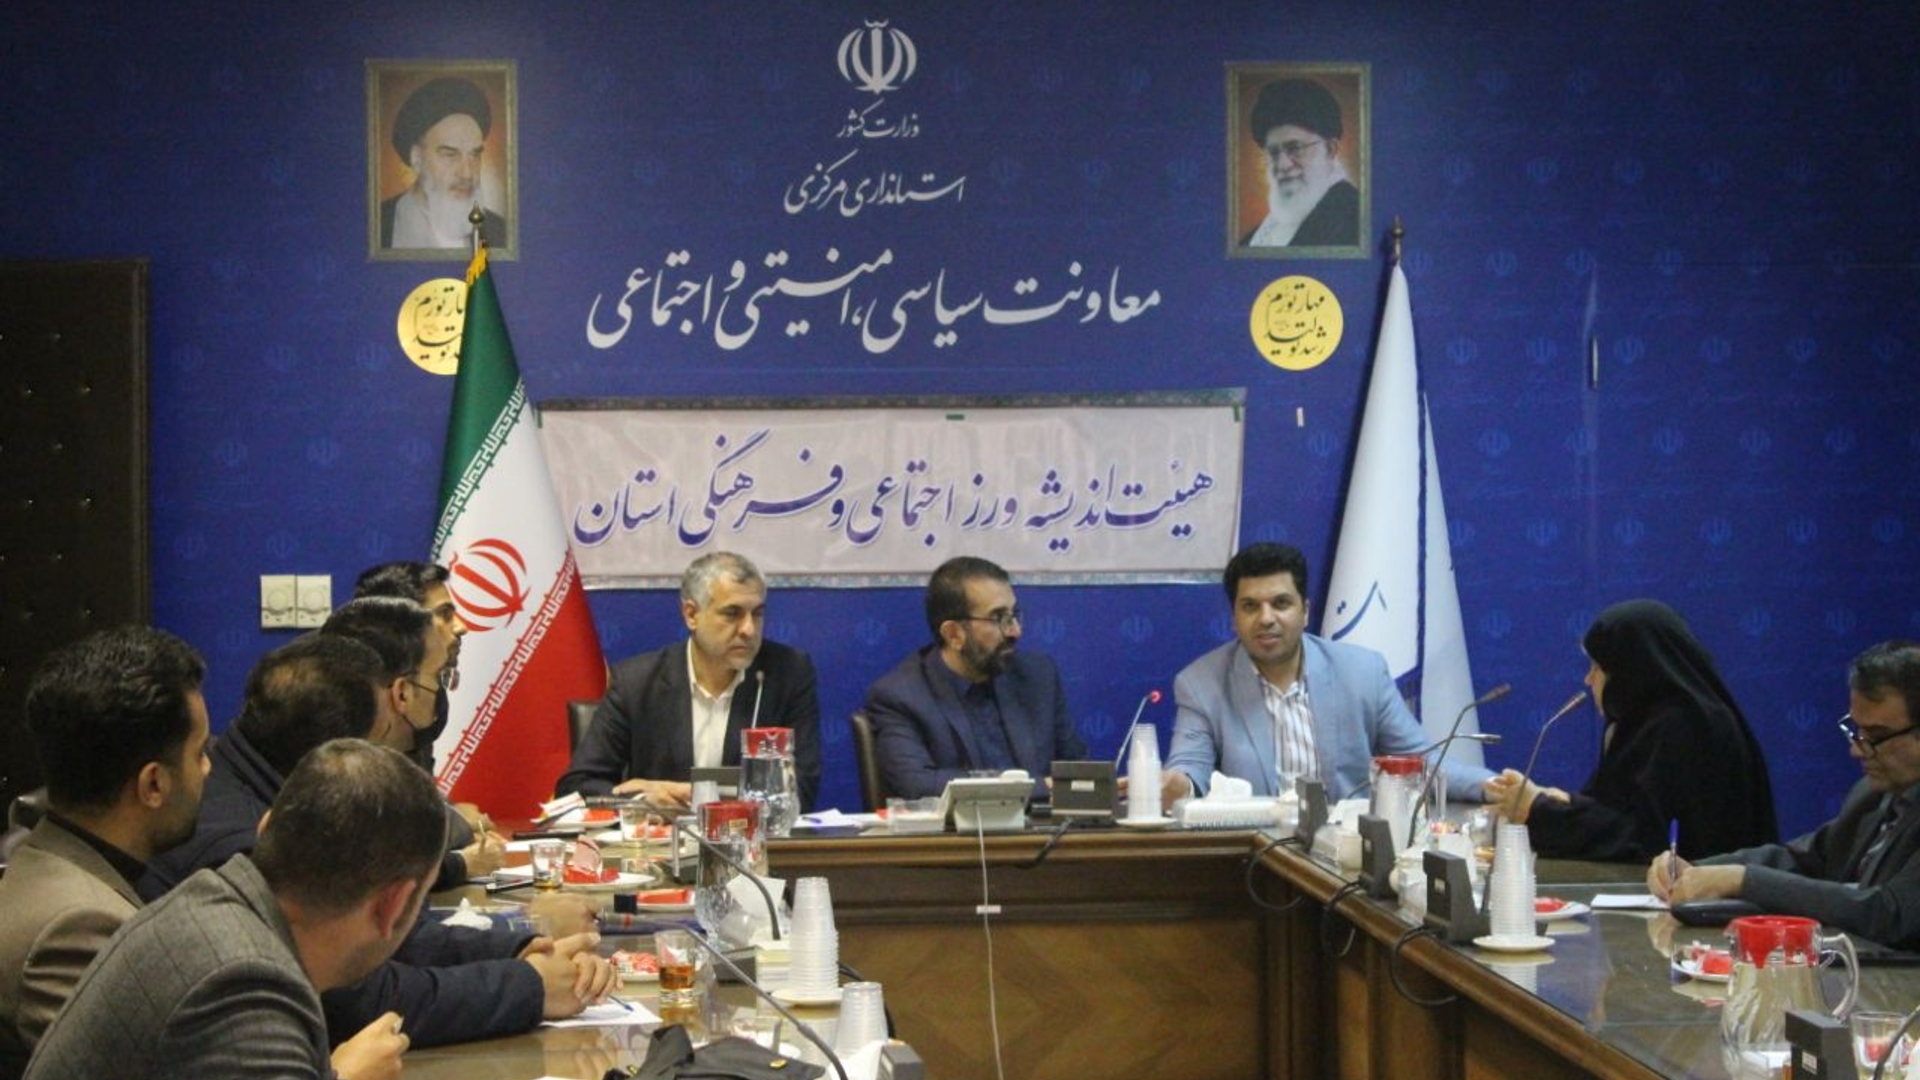 چهارمین جلسه هیئت اندیشه اجتماعی و فرهنگی استان برگزار شد.